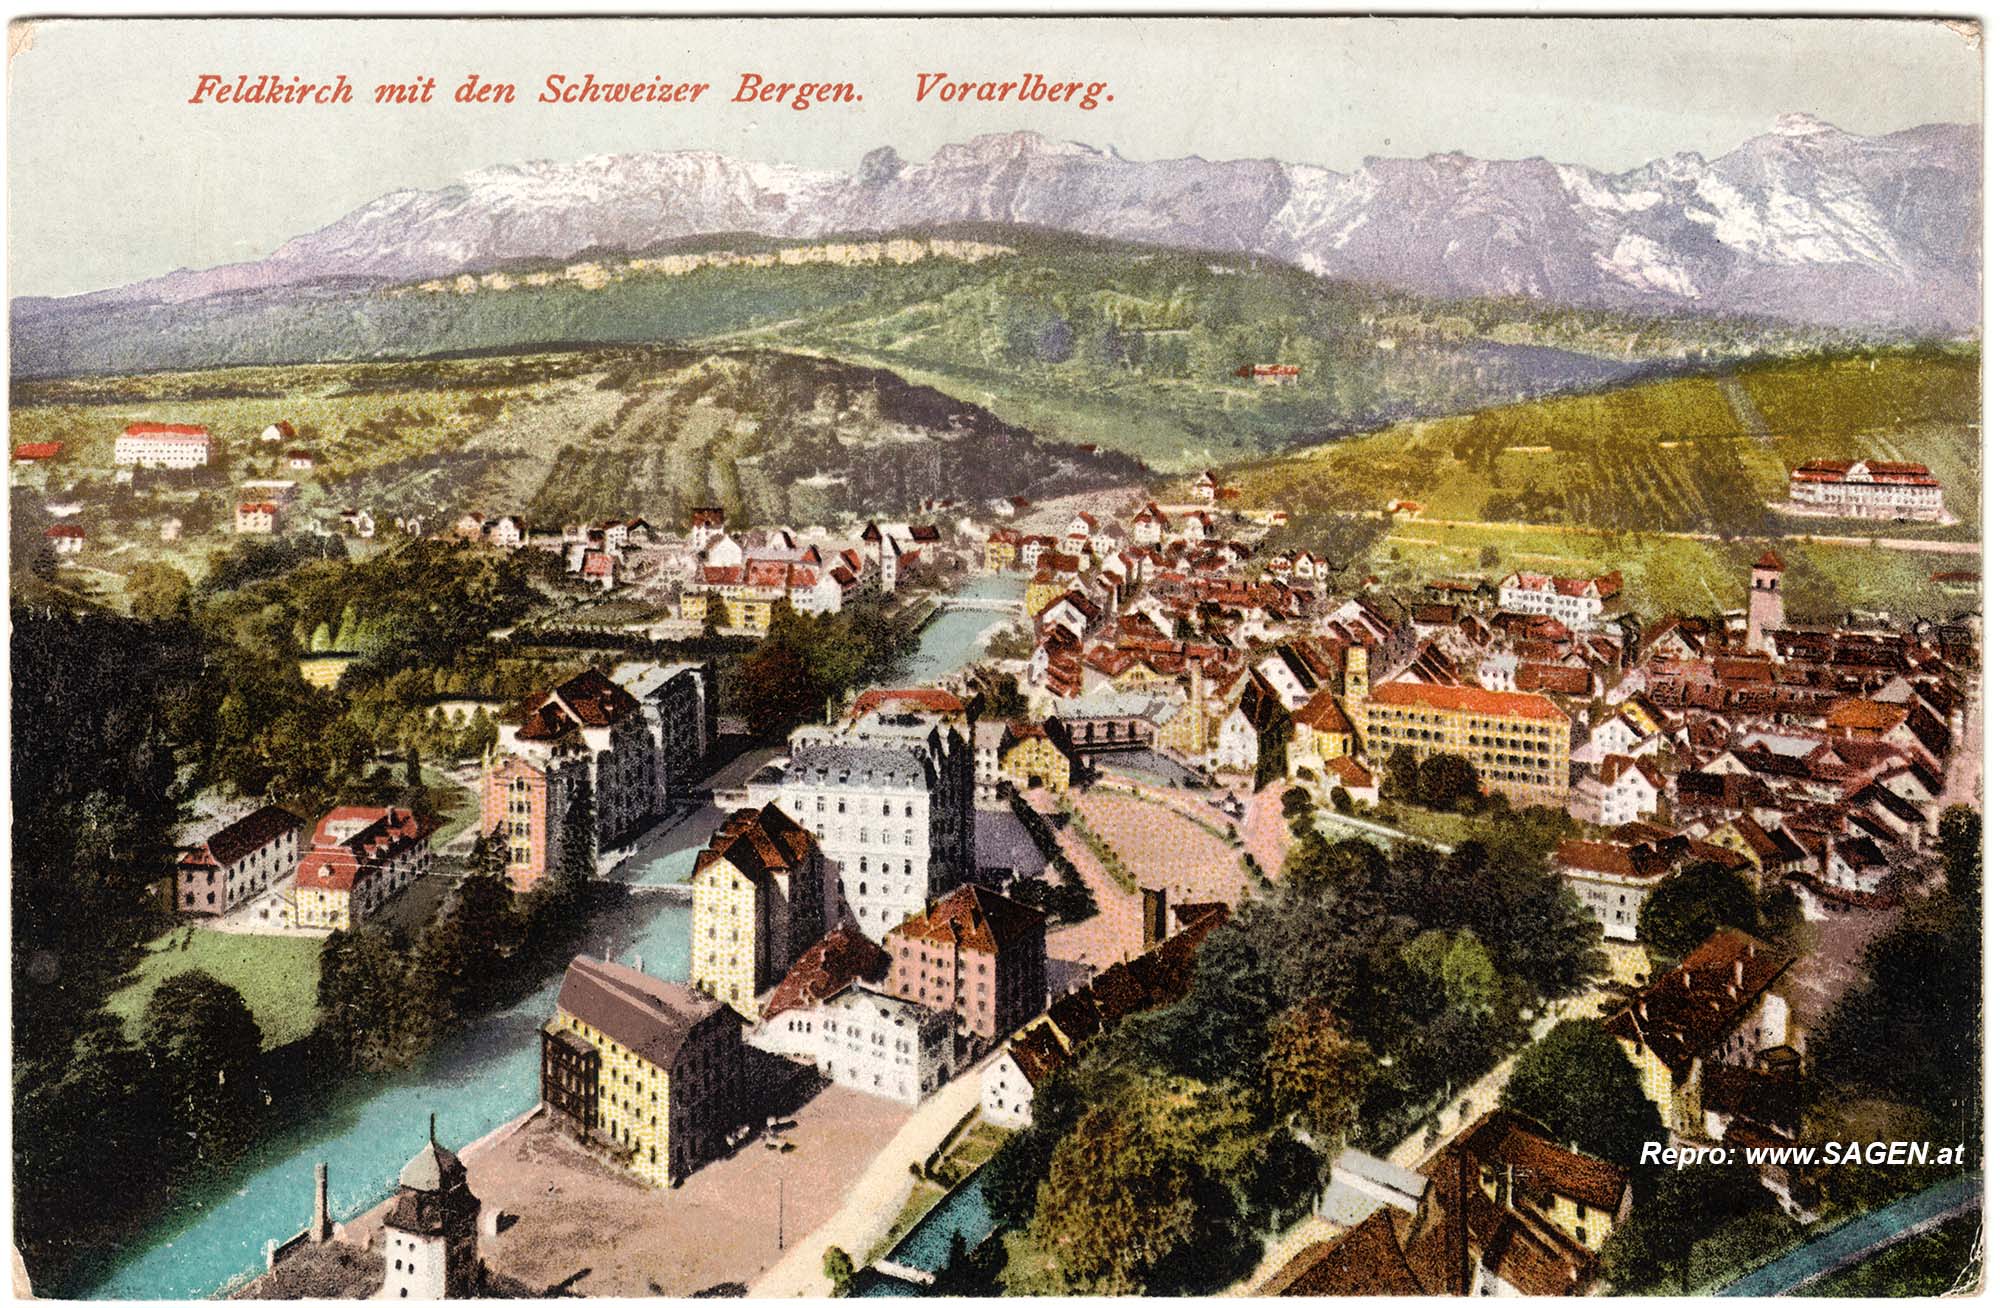 Feldkirch mit den Schweizer Bergen